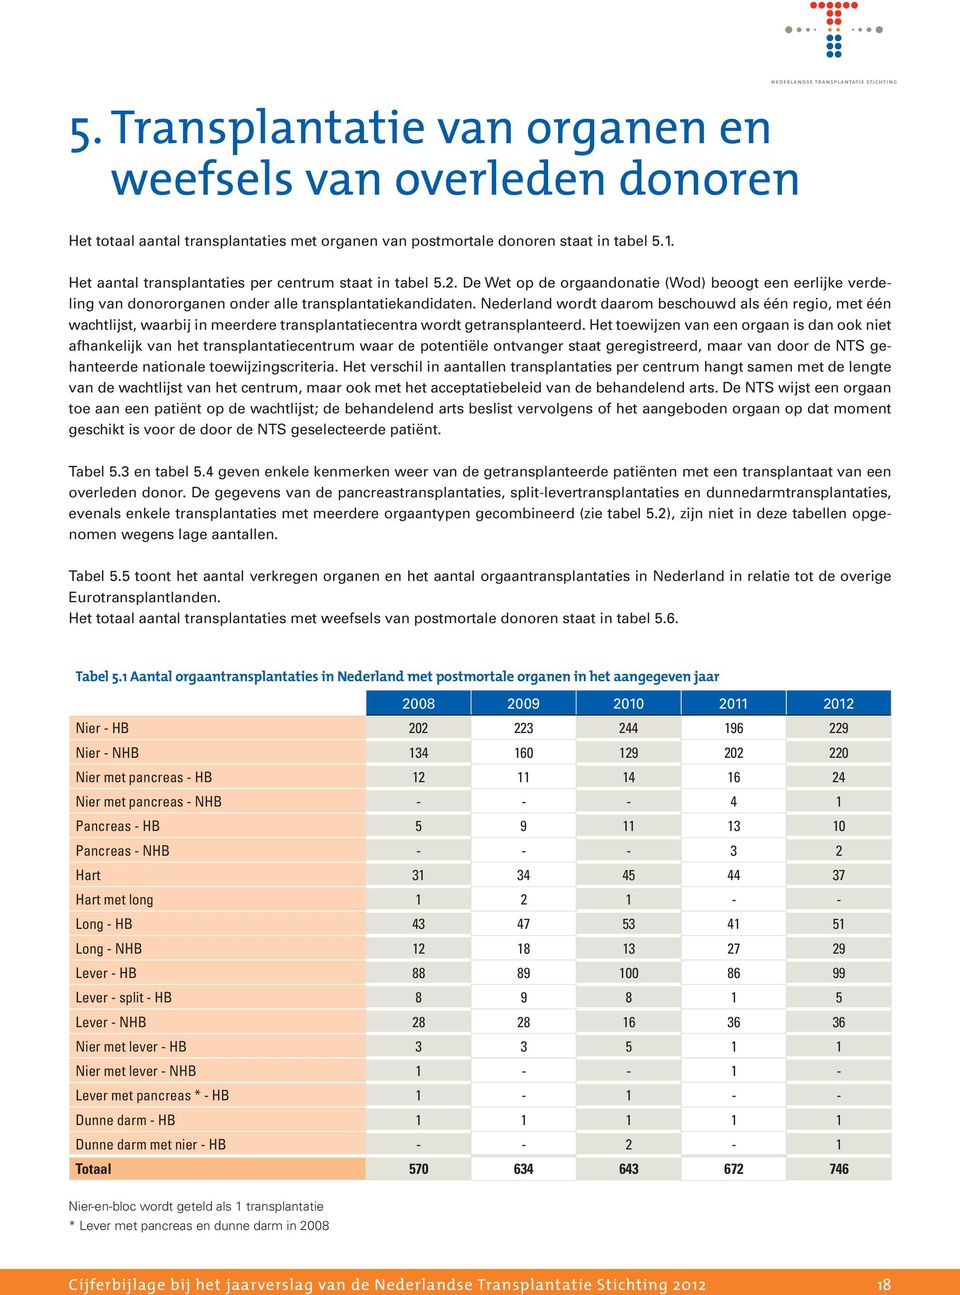 Nederland wordt daarom beschouwd als één regio, met één wachtlijst, waarbij in meerdere transplantatiecentra wordt getransplanteerd.